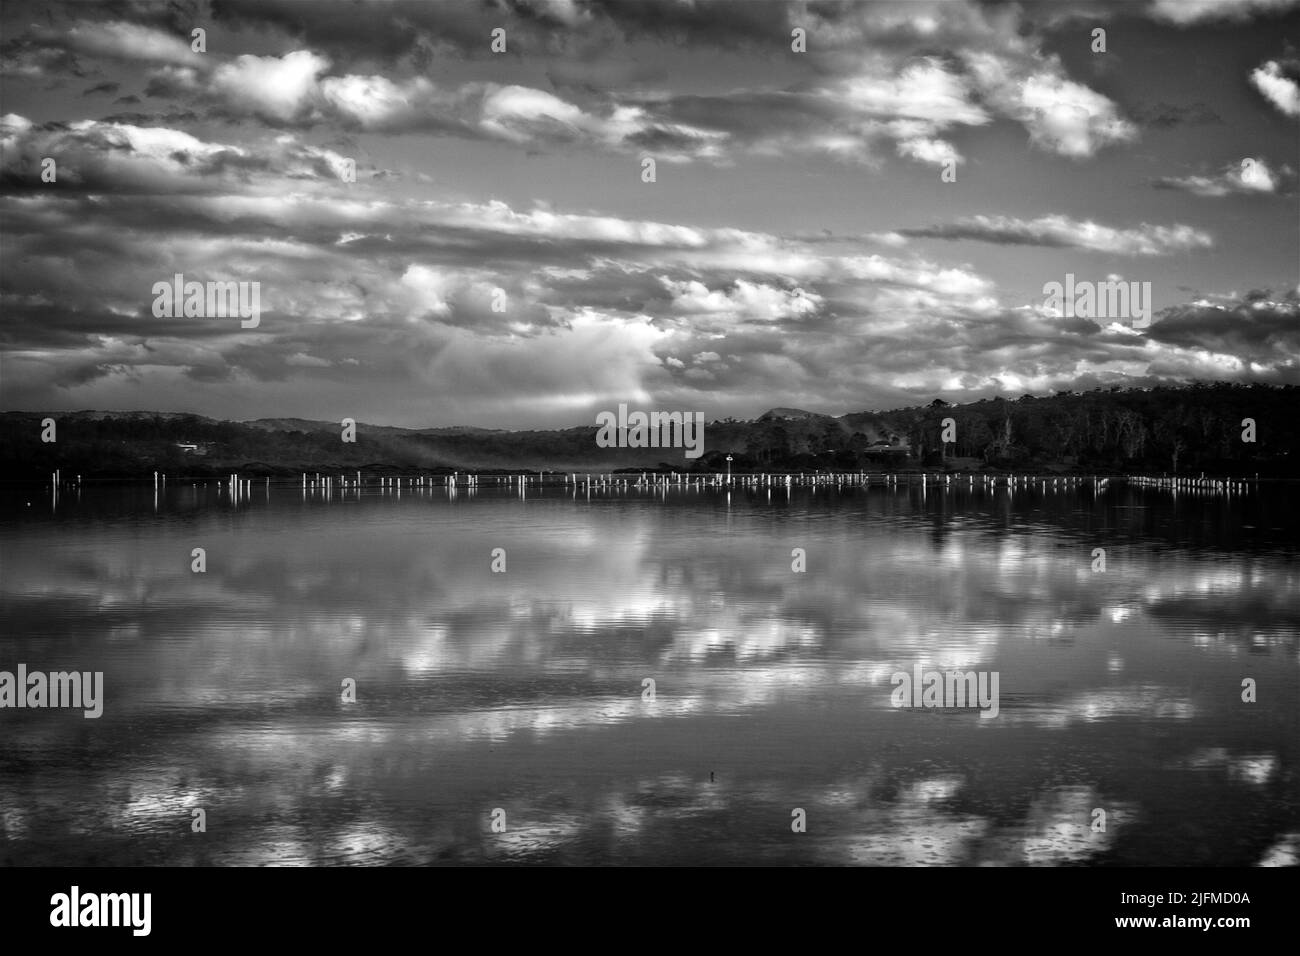 RÉFLEXIONS SUR LE PAYSAGE MERIMBULA LAKE, NOUVELLE-GALLES DU SUD, AUSTRALIE Banque D'Images